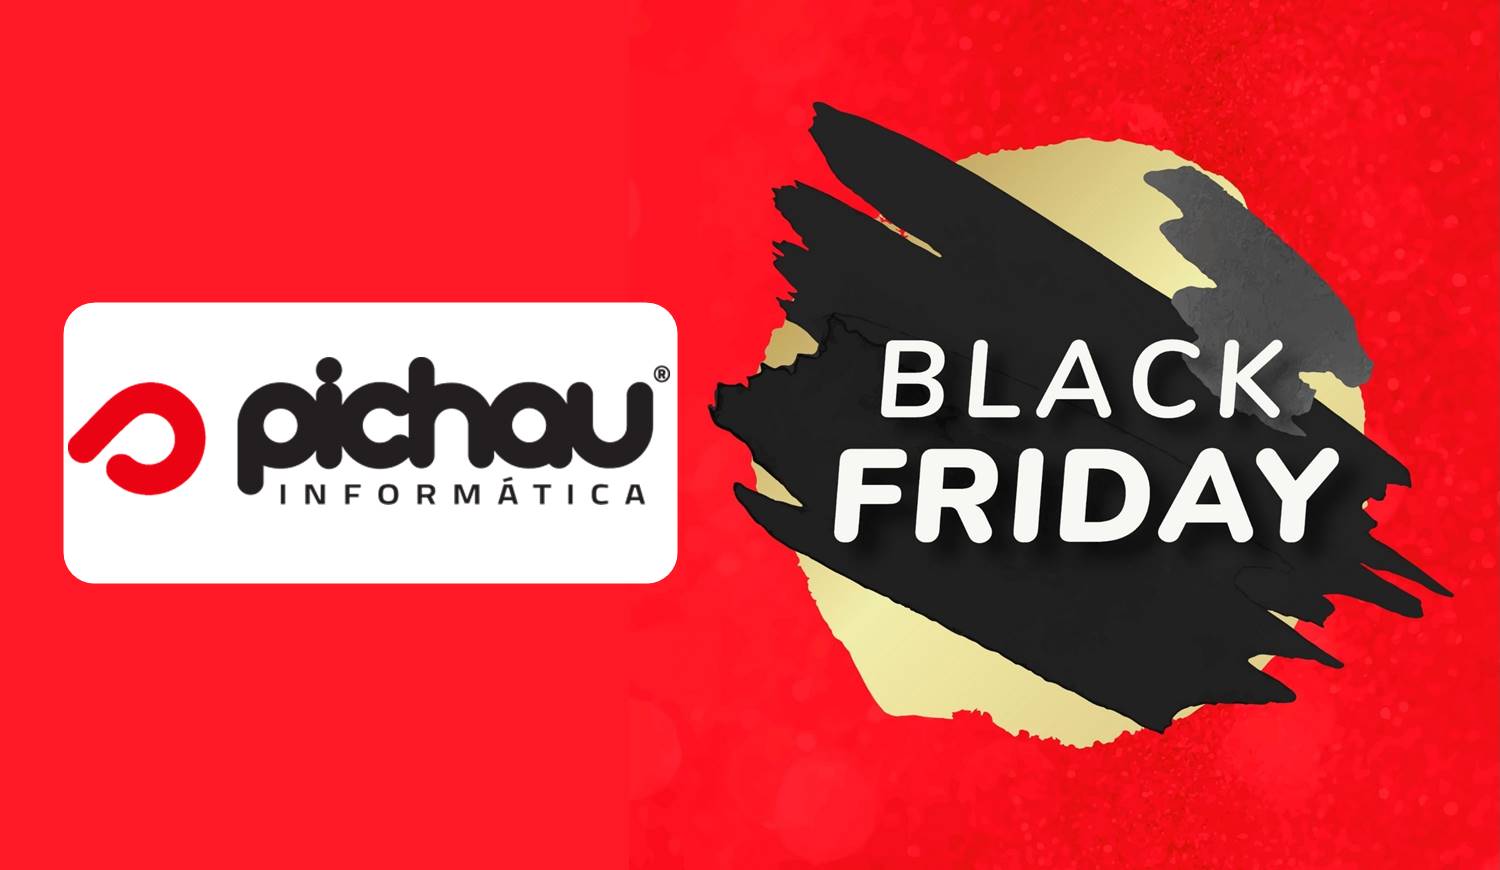 Foto da logo da Pichau e escrito "Black Friday".